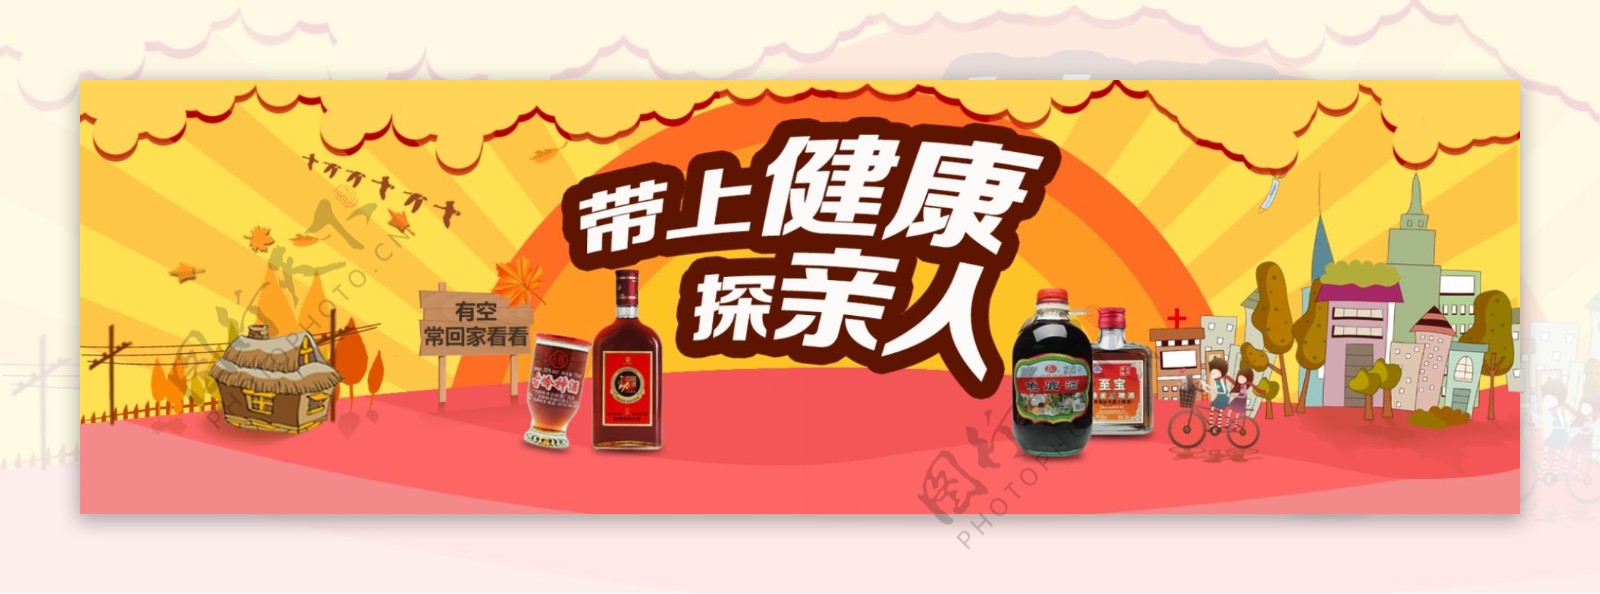 淘宝天猫保健酒酒类海报首焦设计